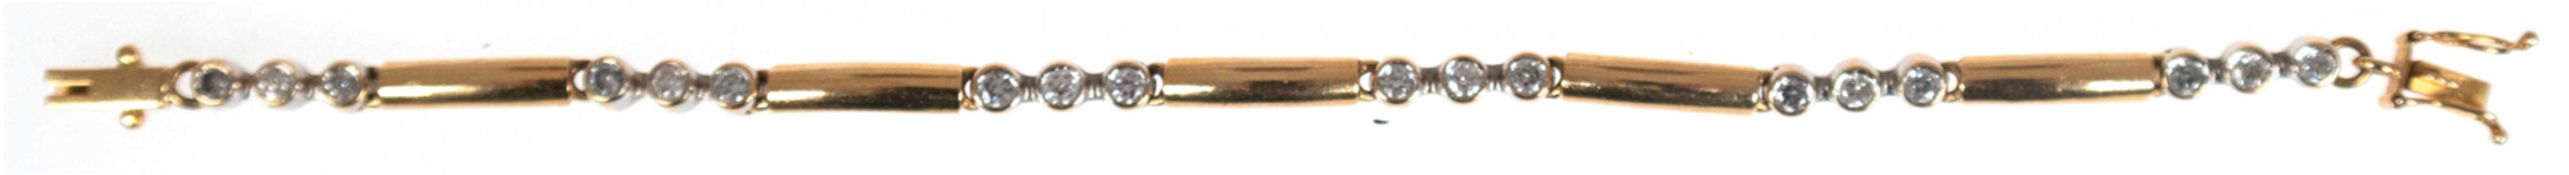 Armband, 18 kt GG/WG, 12,69 g, 6 mit je 3 Brillanten besetzte Glieder und 5 zwischengesetzte stabfö